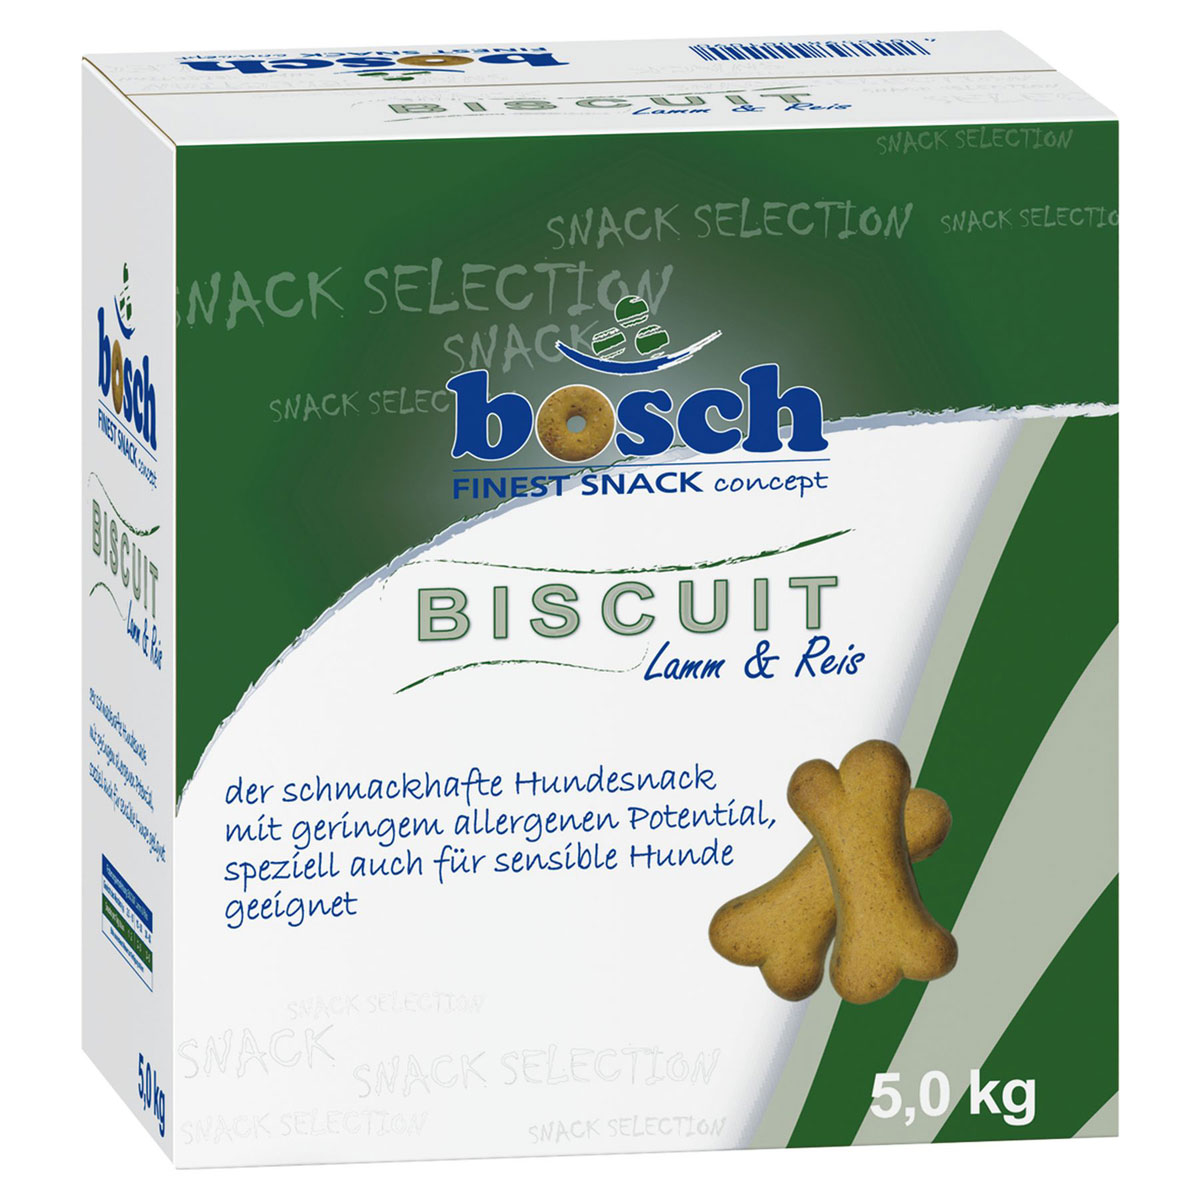 Dog Snack Biscuit Lamm & Reis 5kg